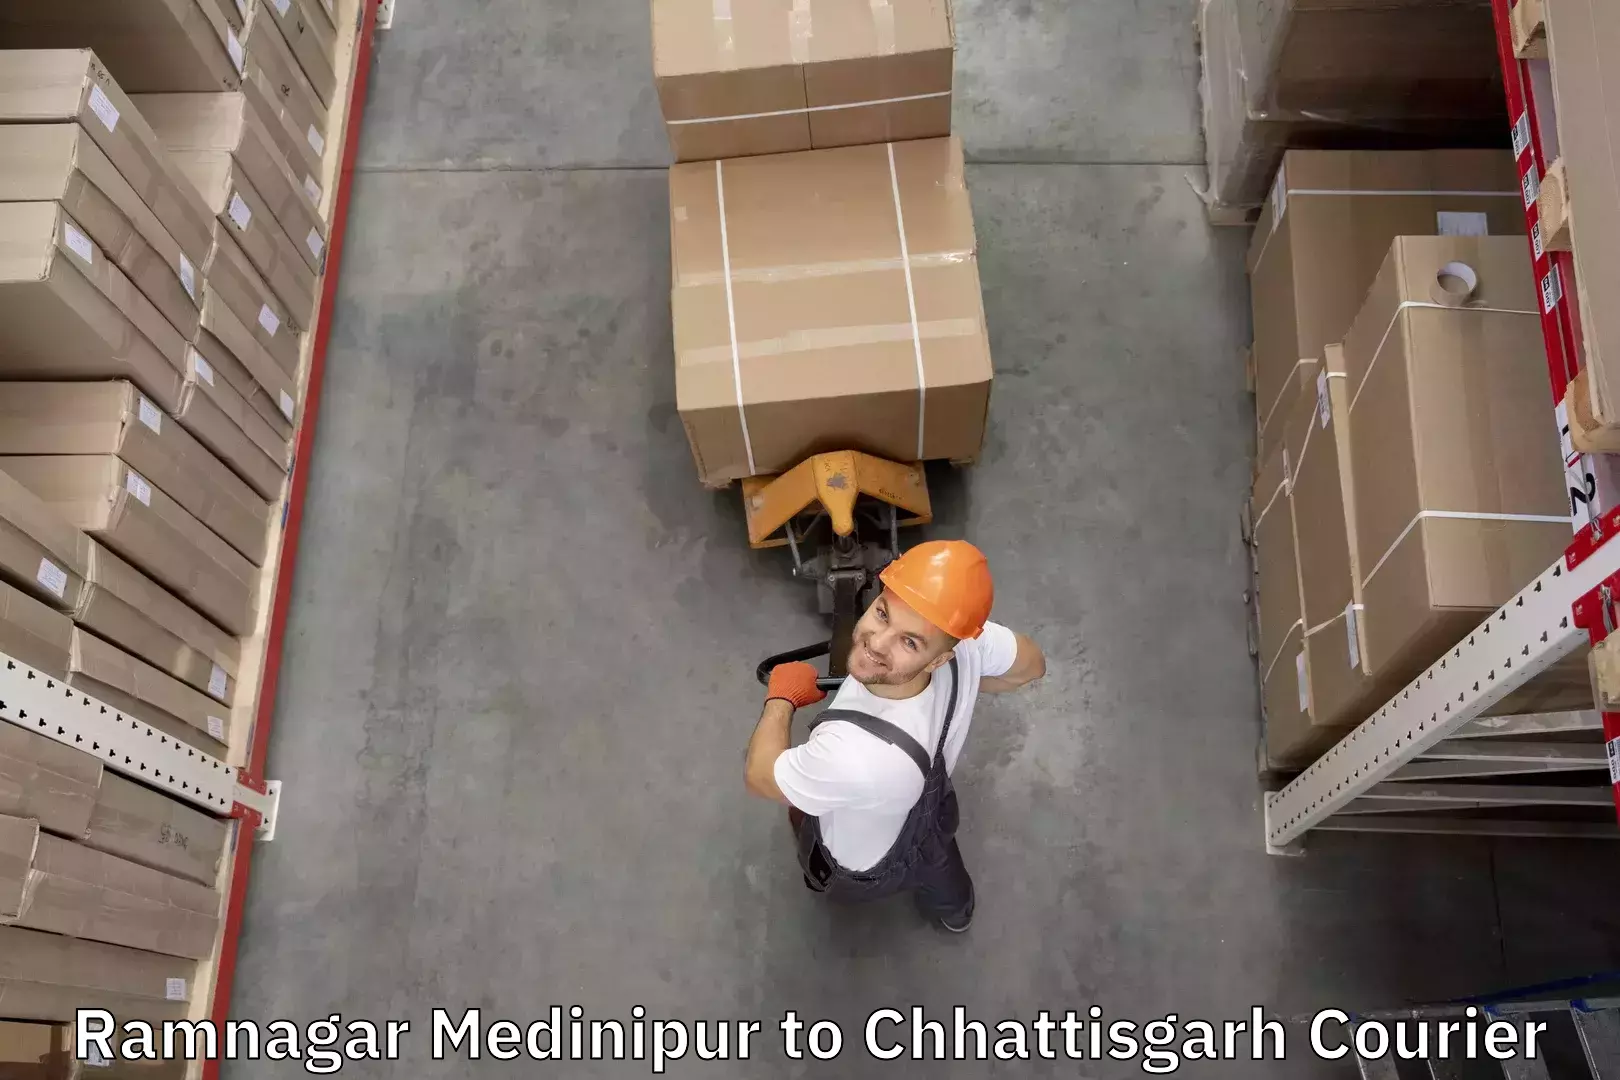 Luggage transport company Ramnagar Medinipur to Premnagar